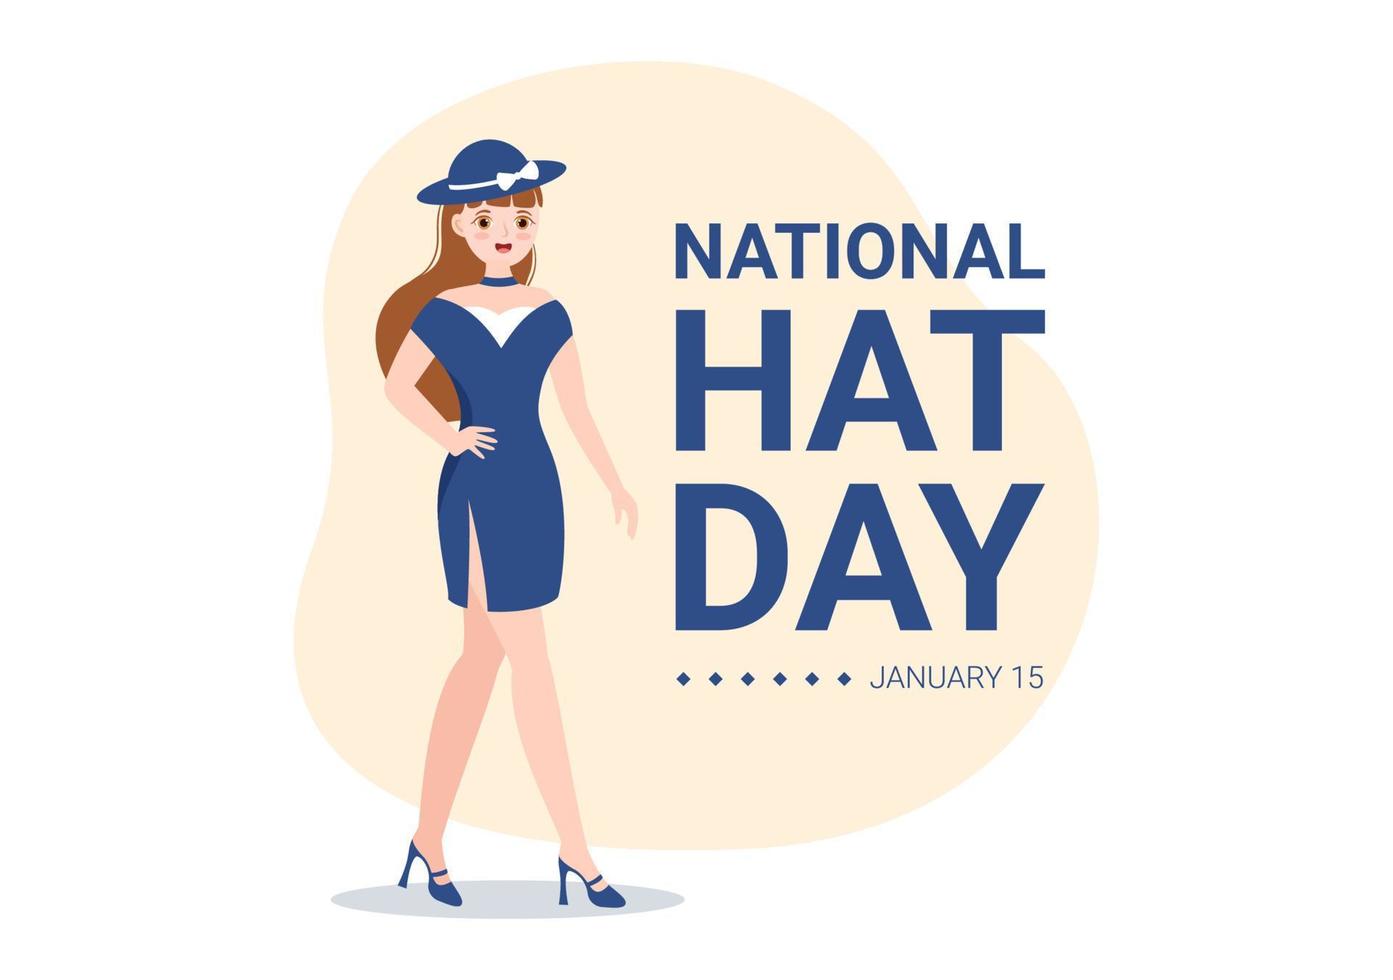 día nacional del sombrero que se celebra cada año el 15 de enero con sombreros fedora, gorra, cloche o derby en dibujos animados planos dibujados a mano ilustración de plantillas vector